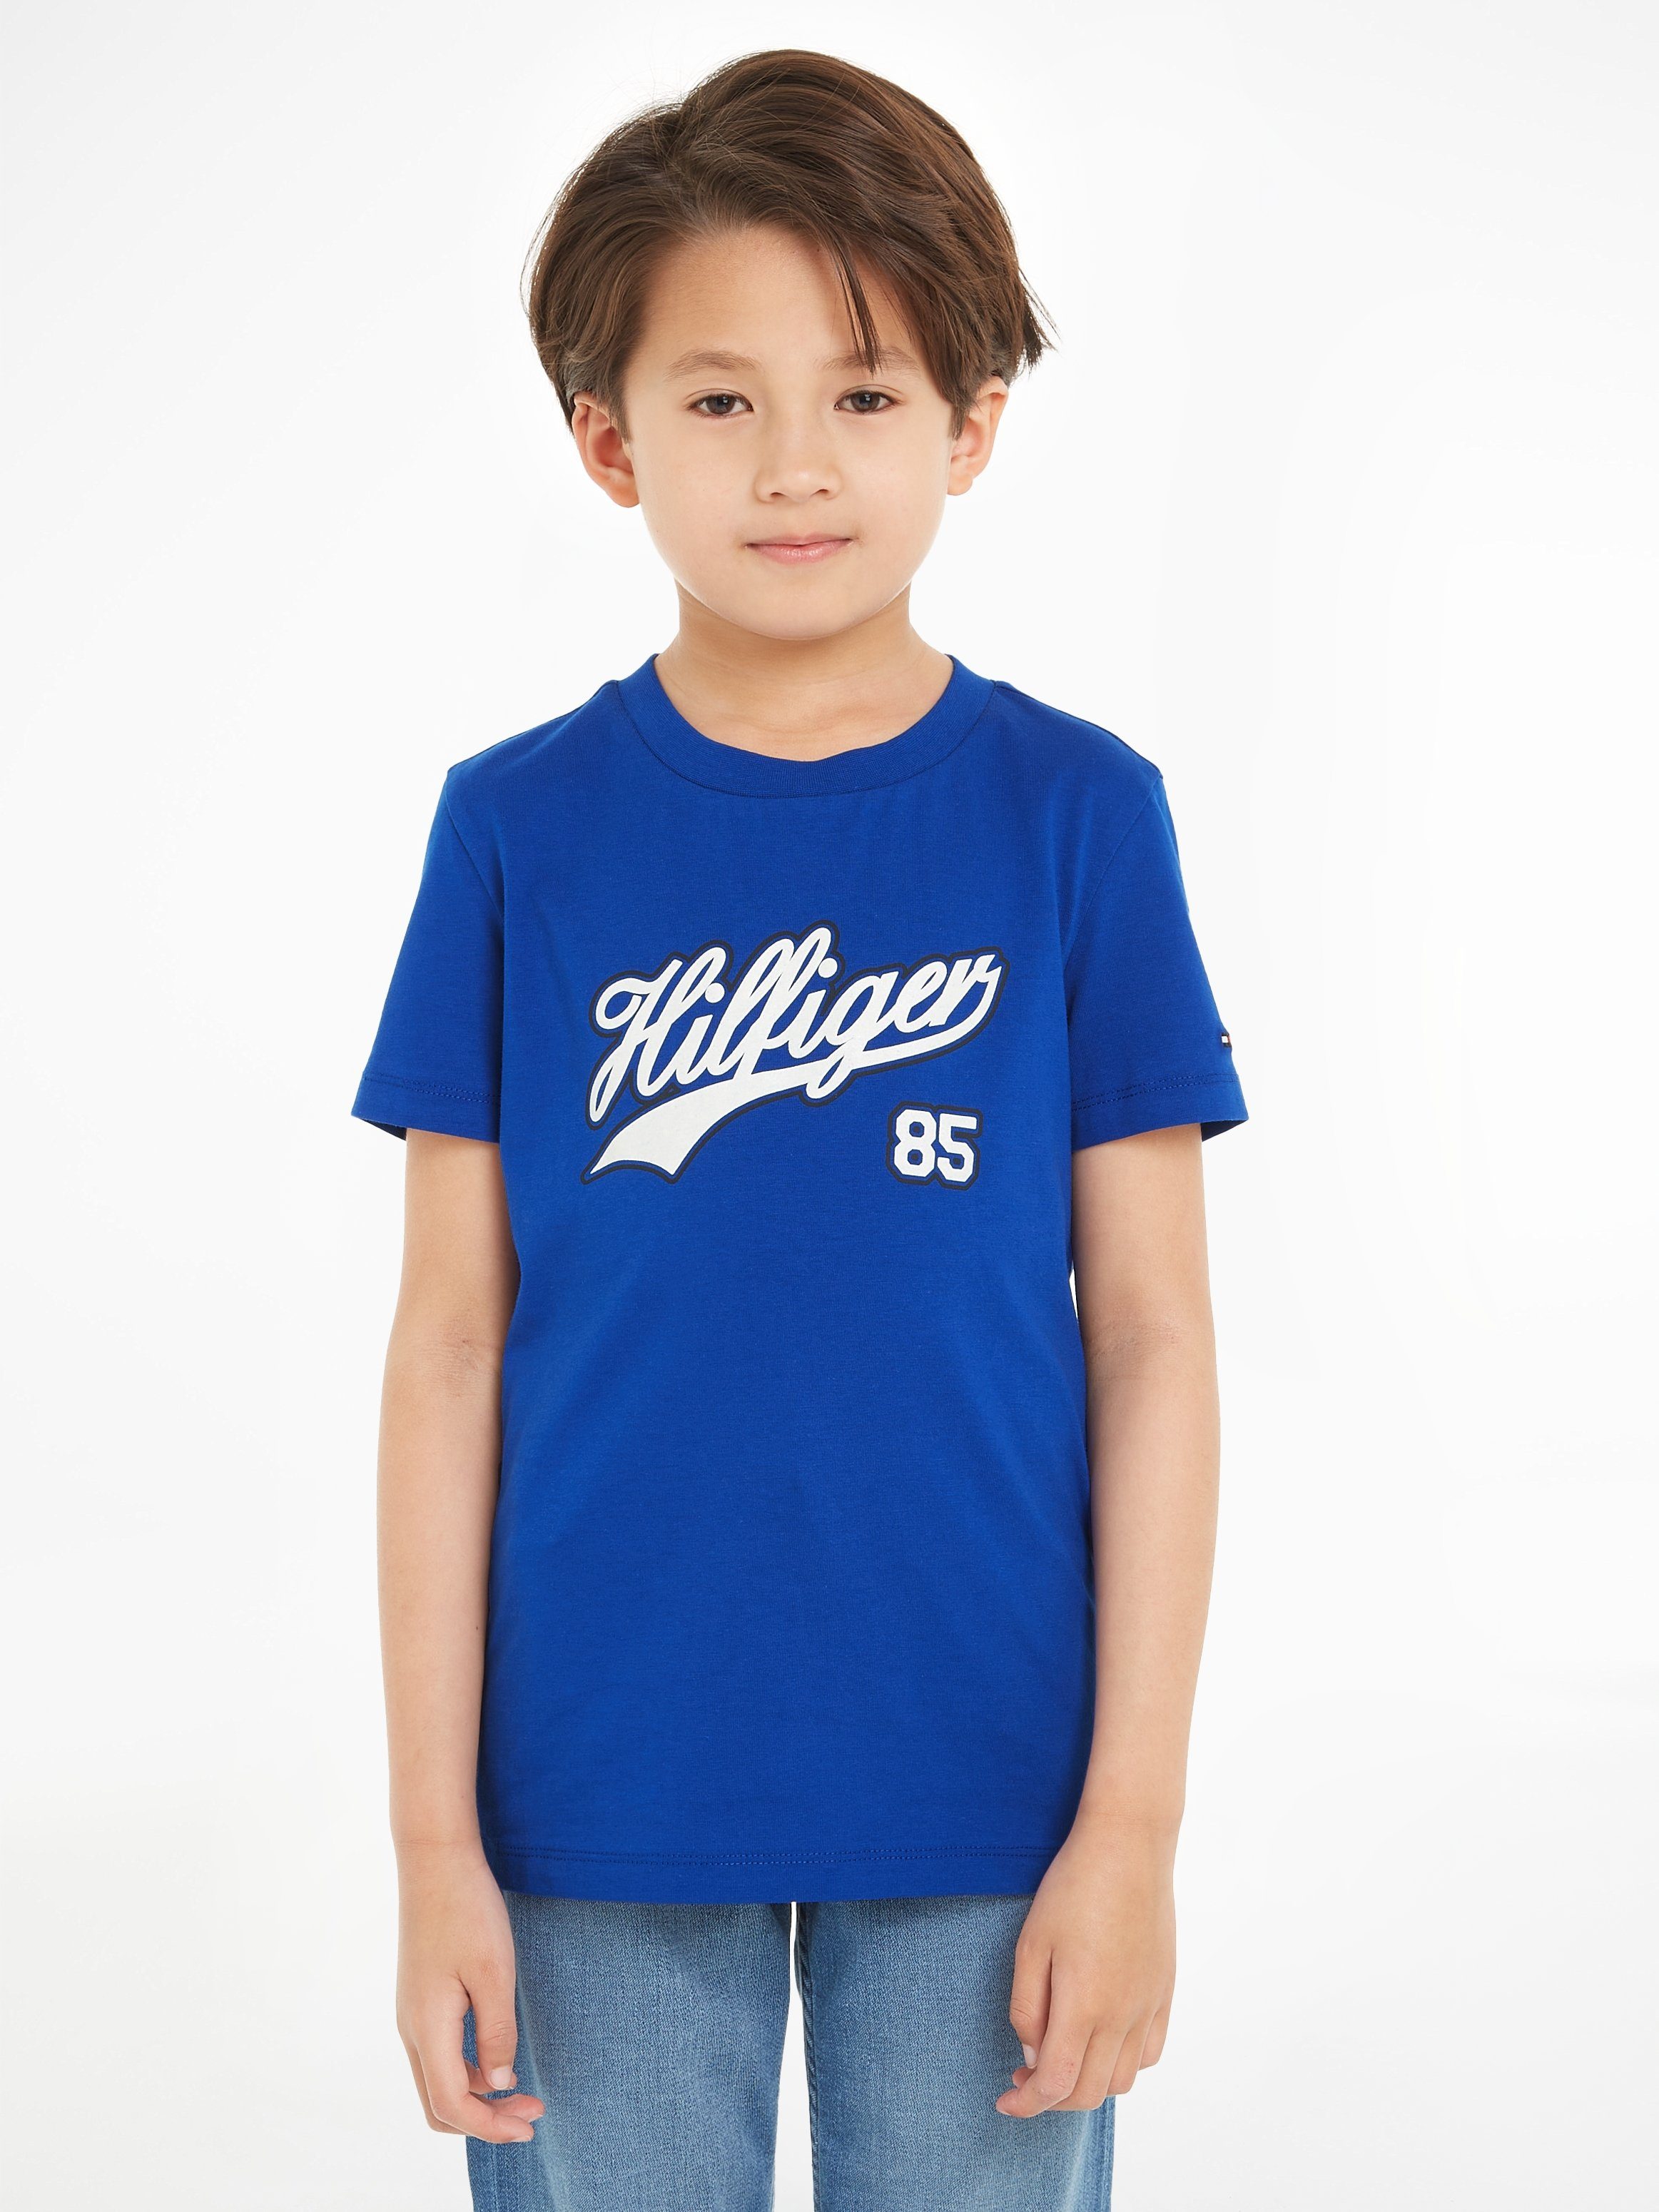 Tommy mit Hilfiger S/S SCRIPT TEE ultra Logoschriftzug blue T-Shirt HILFIGER großem